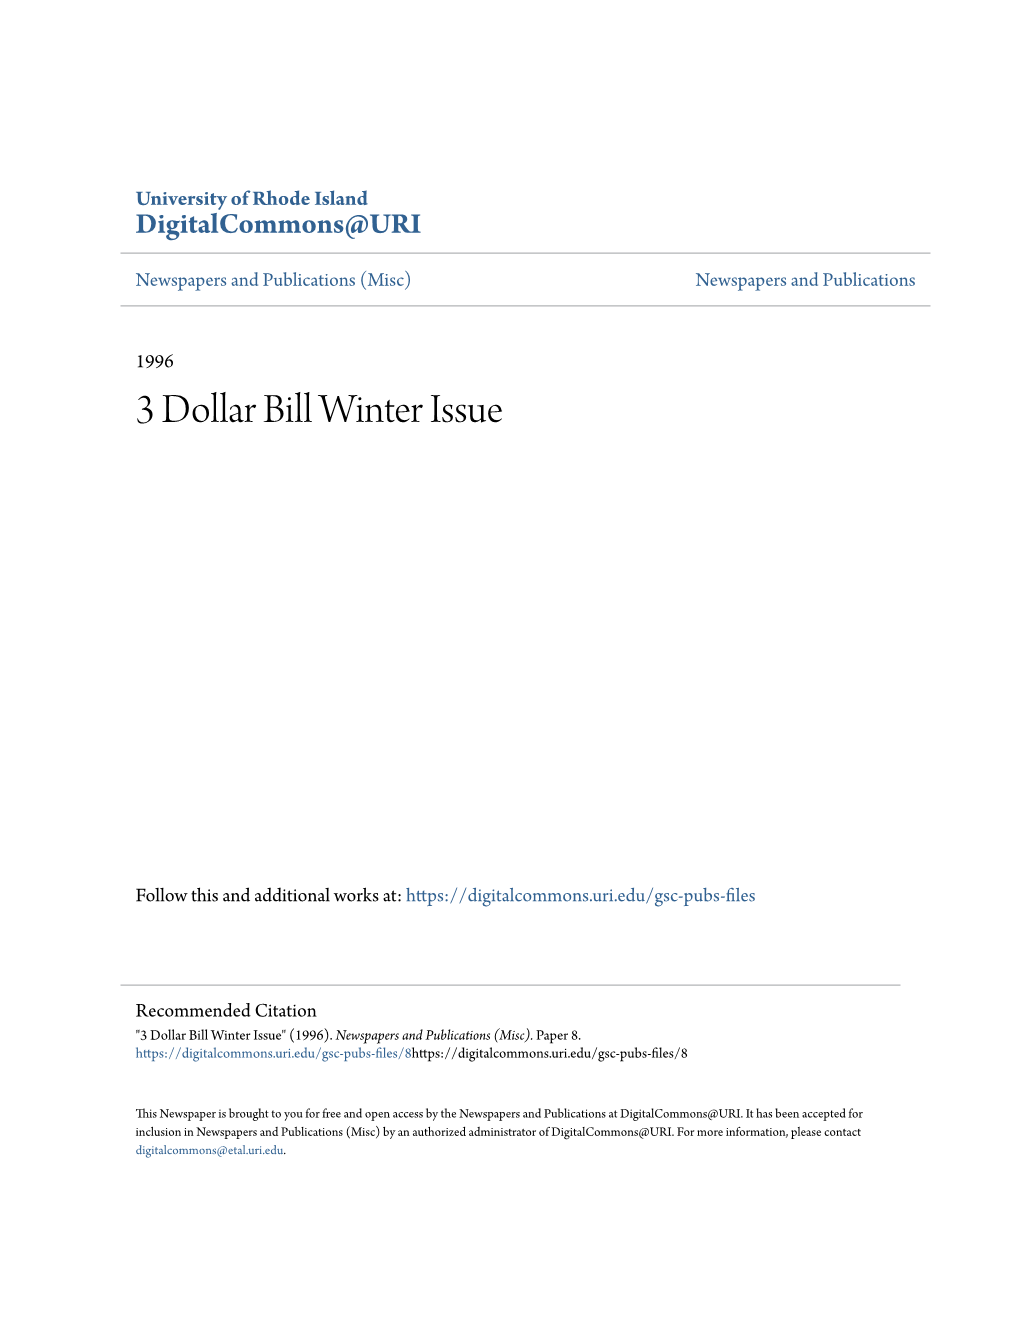 3 Dollar Bill Winter Issue